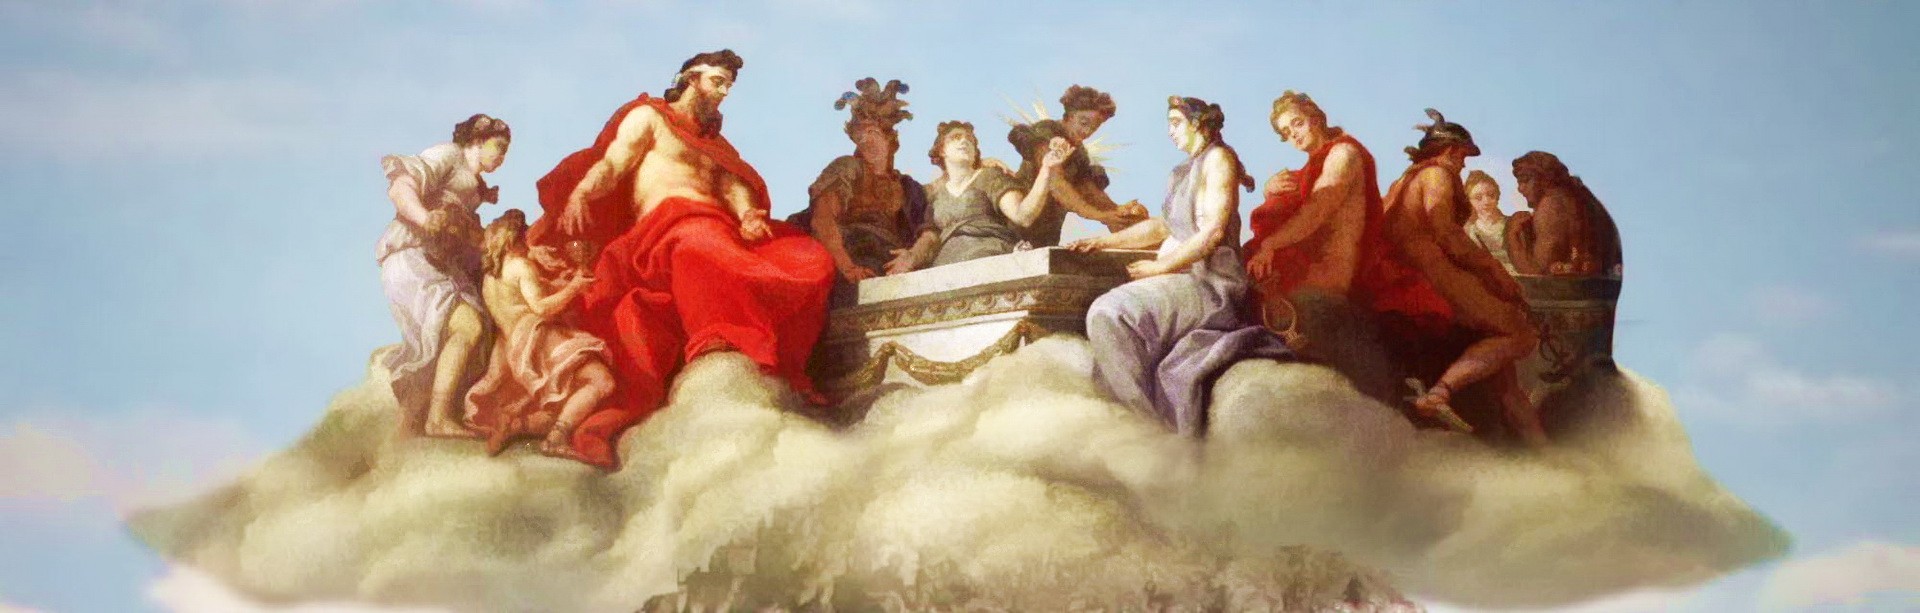 Небесные боги над горой Олимпия решают судьбы